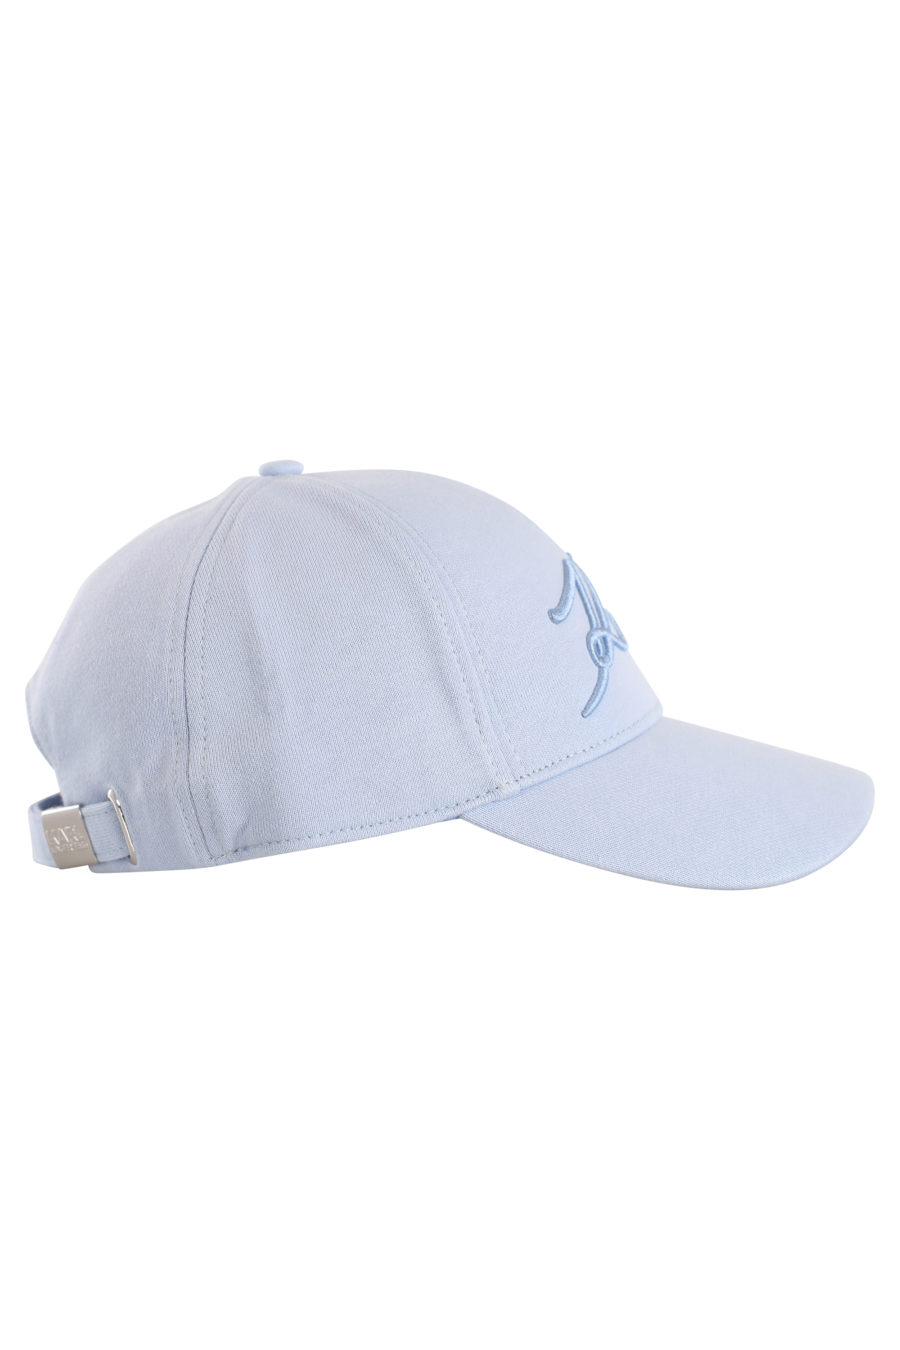 Gorra azul con logo bordado - IMG 0164